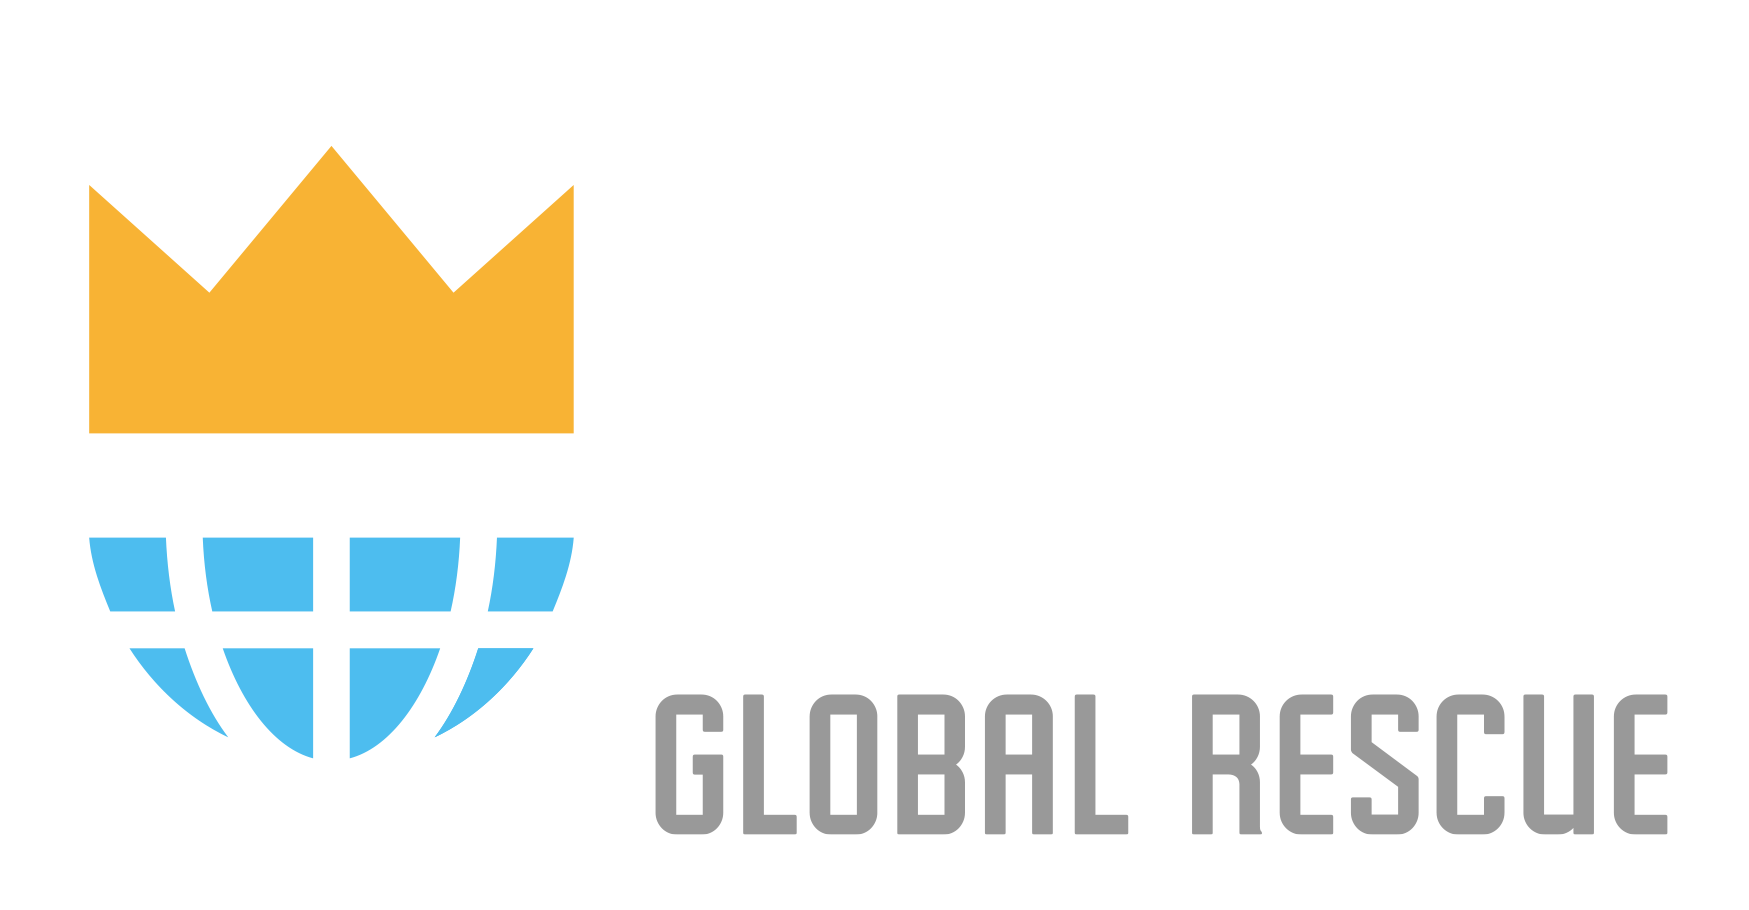 J316 Global Rescue